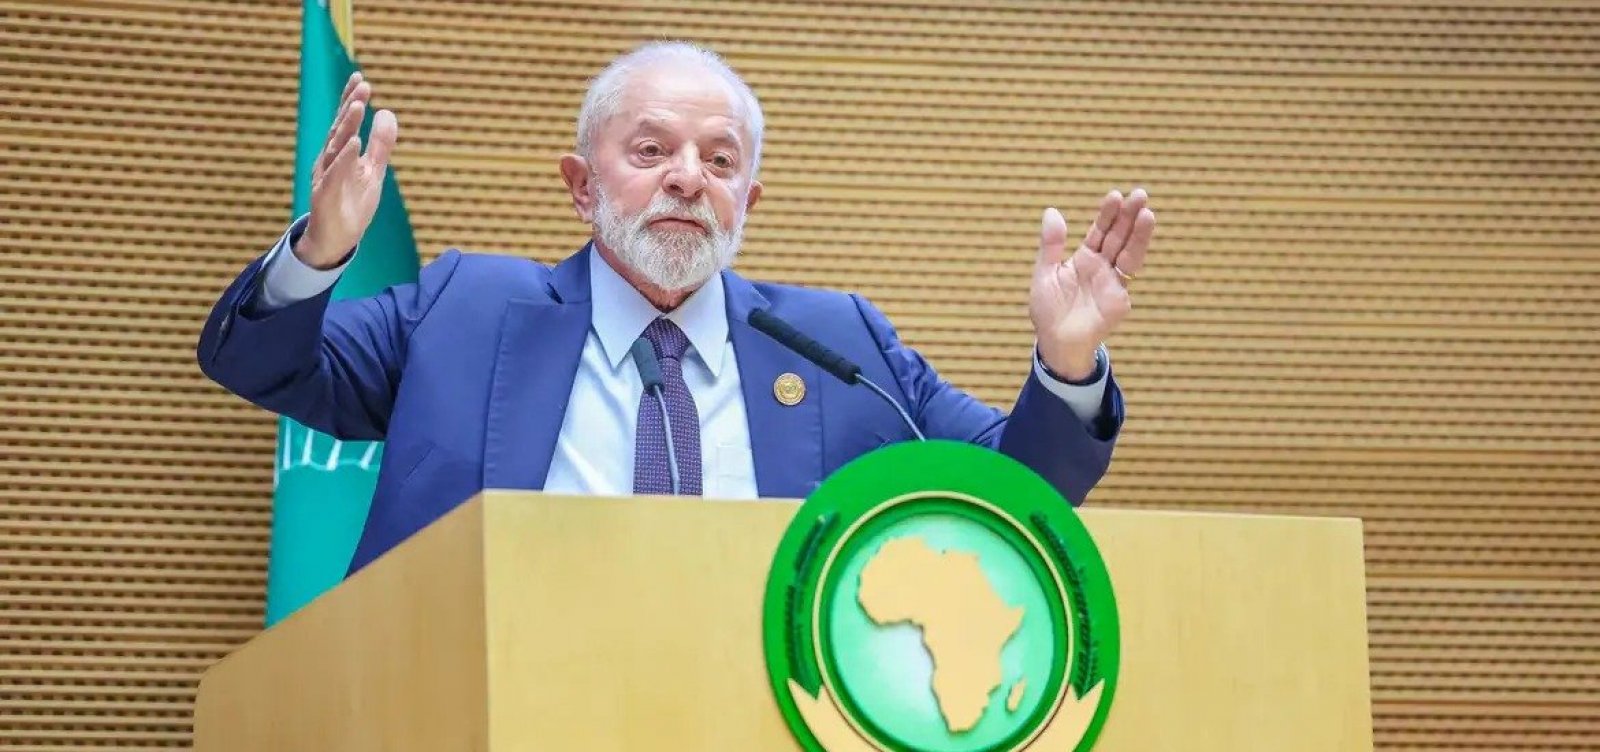 Chanceler de Israel volta a cobrar de Lula pedido de desculpas